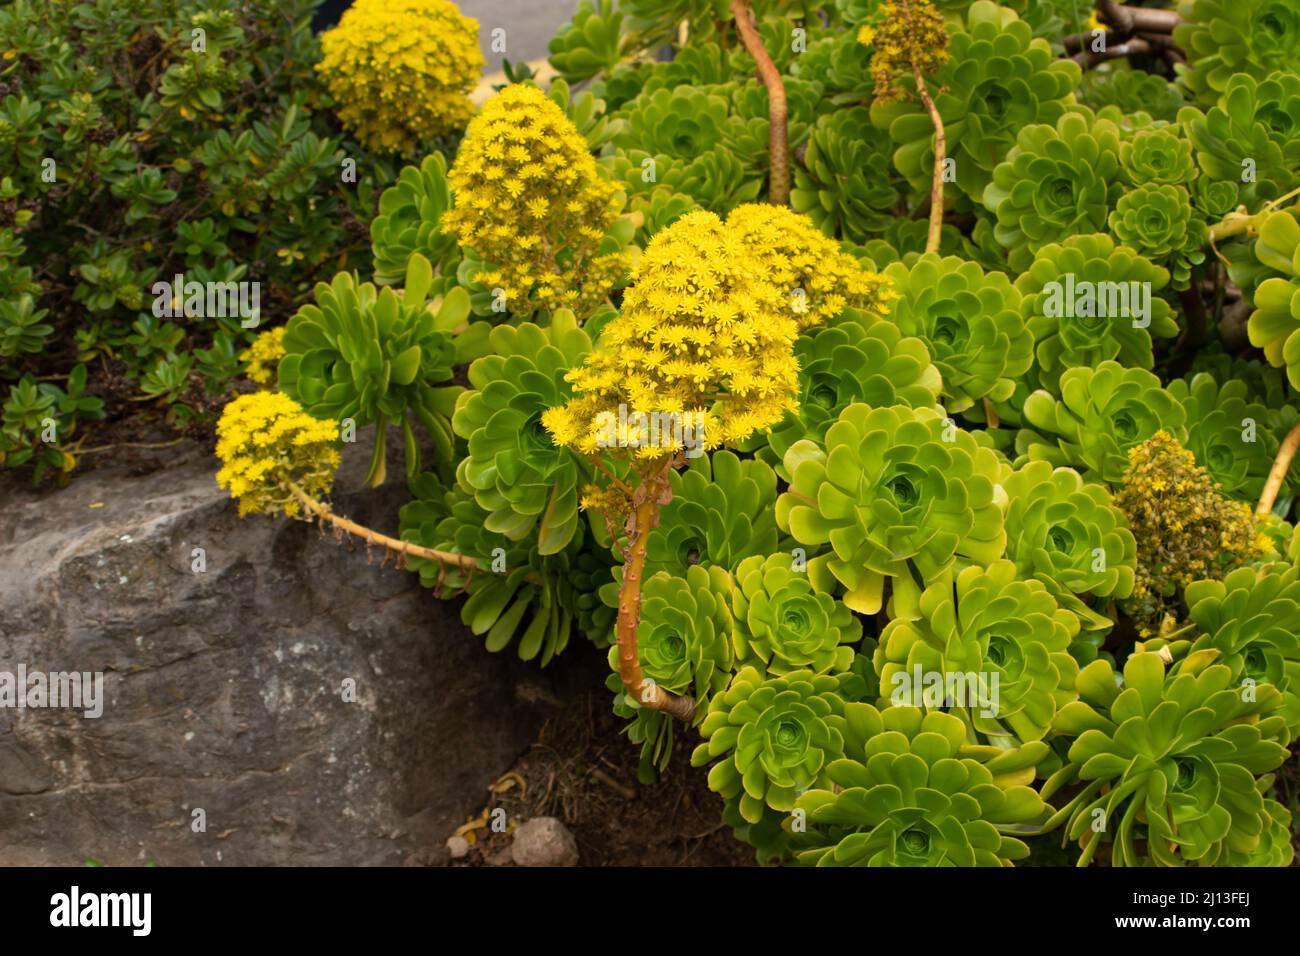 Aeonium arboreum Flores amarillas brillantes en la primavera. Árbol aeonium plantas de flores con inflorescencias cónicas Foto de stock